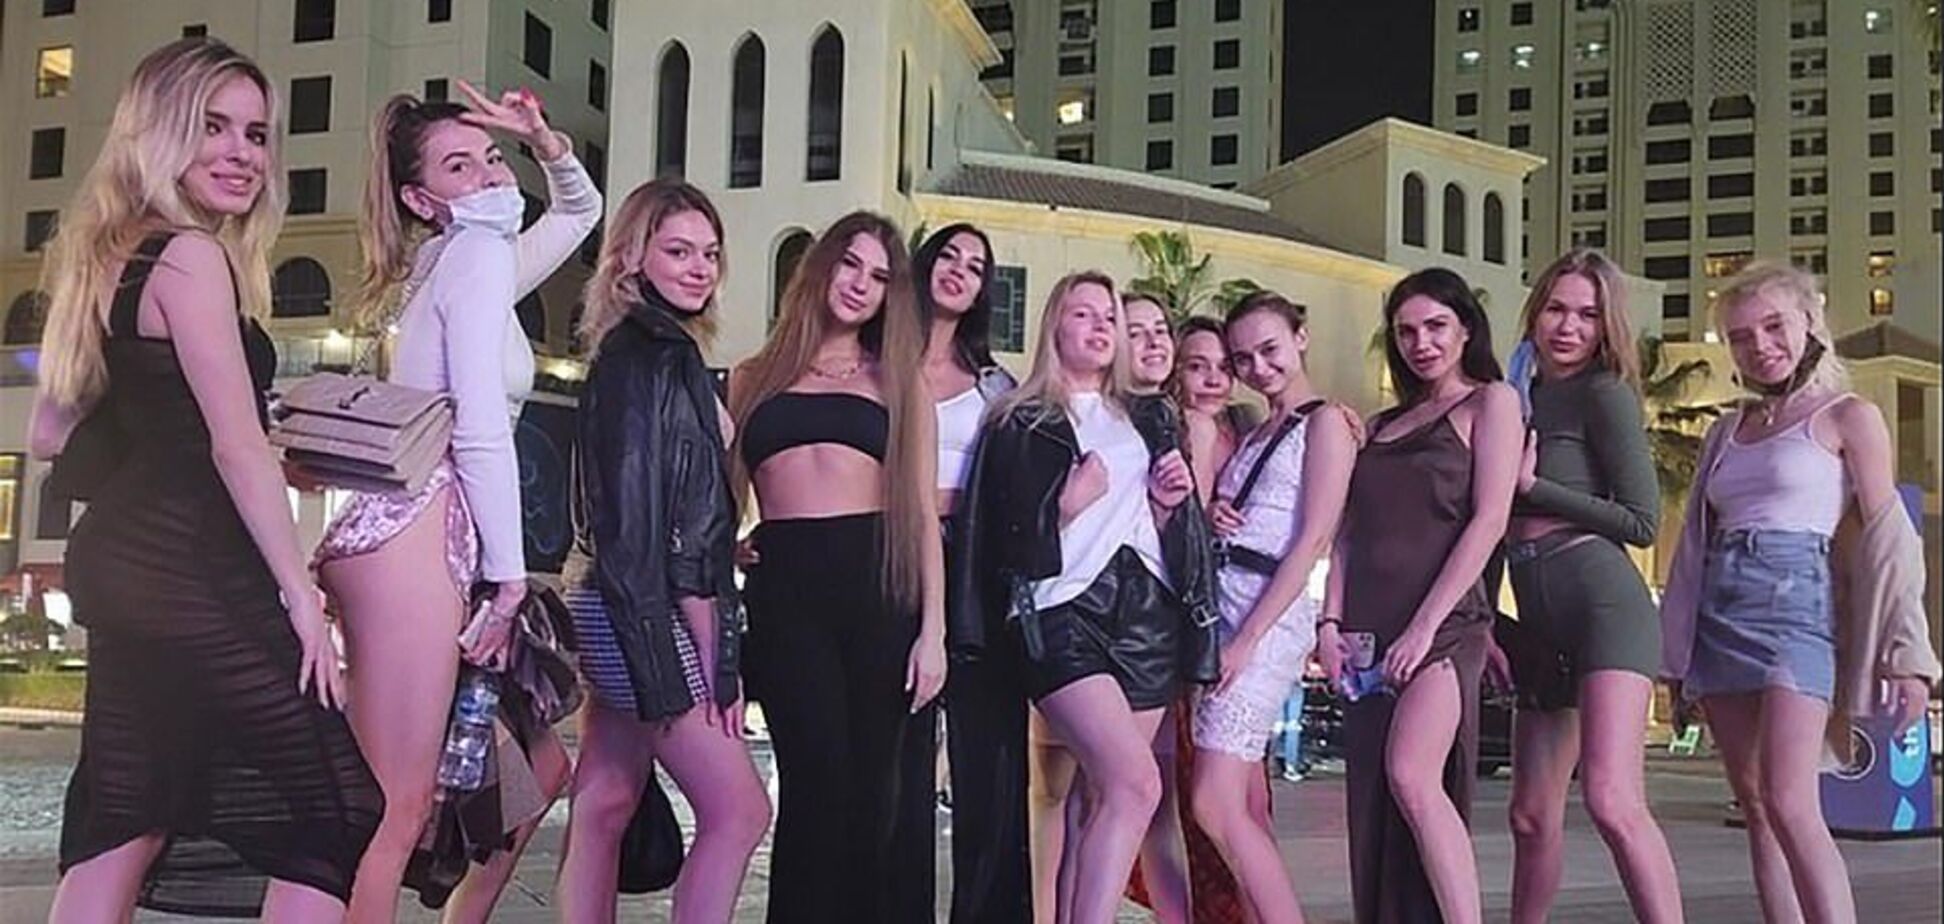 Нові фото і відео заарештованих в Дубаї дівчат потрапили в мережу